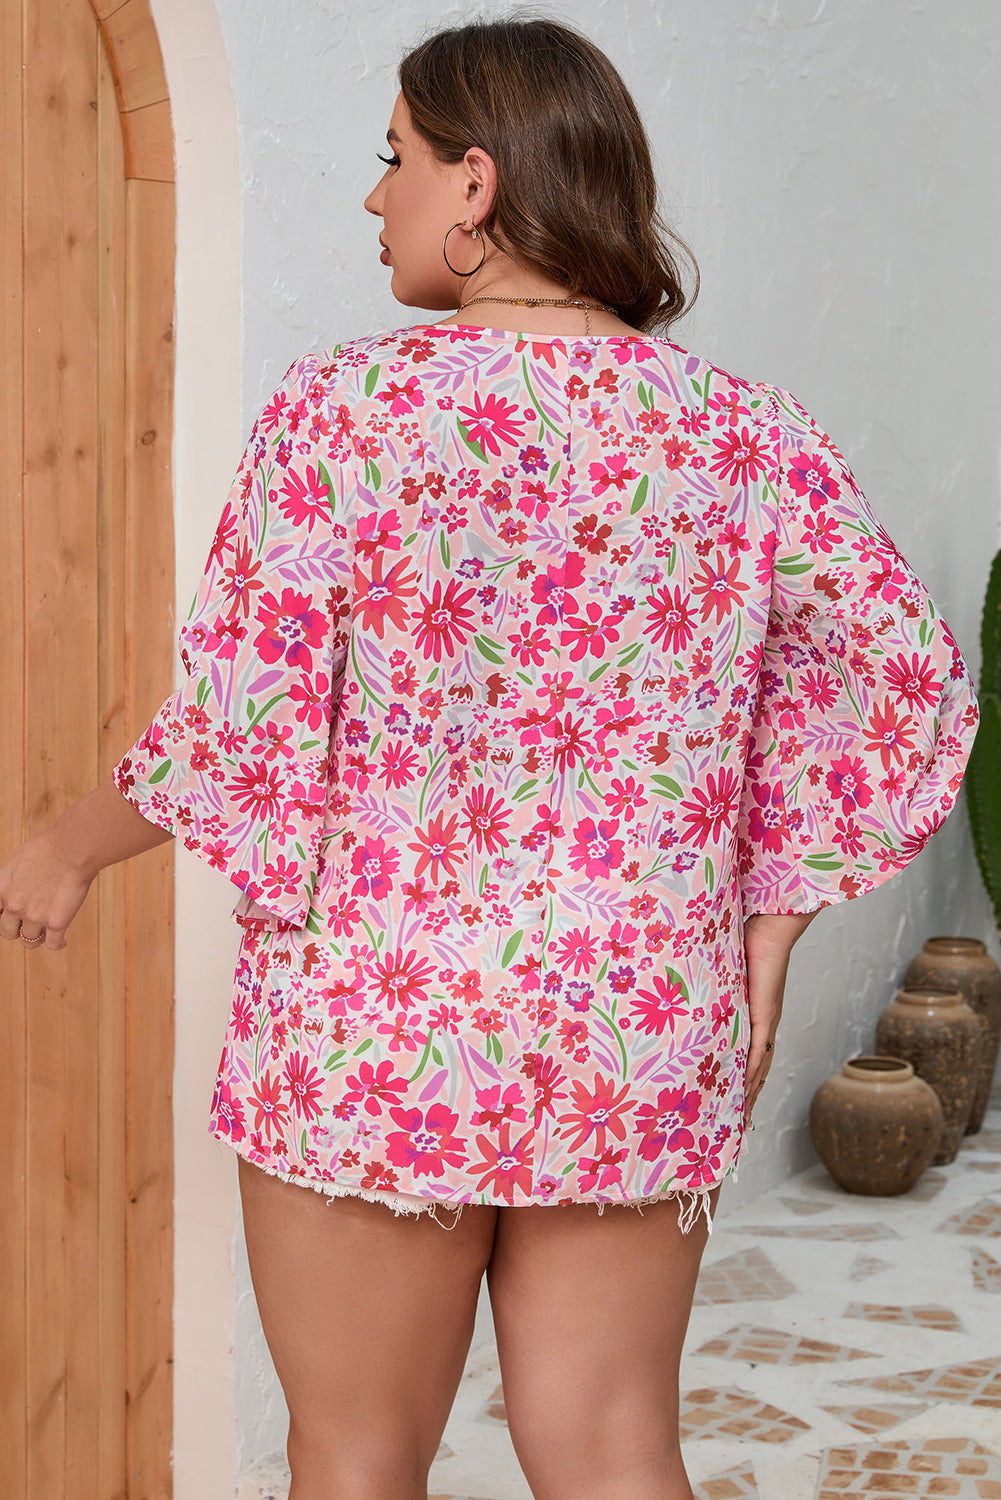 Rožnata bluza velike velikosti z v-izrezom in pol rokavi s cvetličnimi naborki